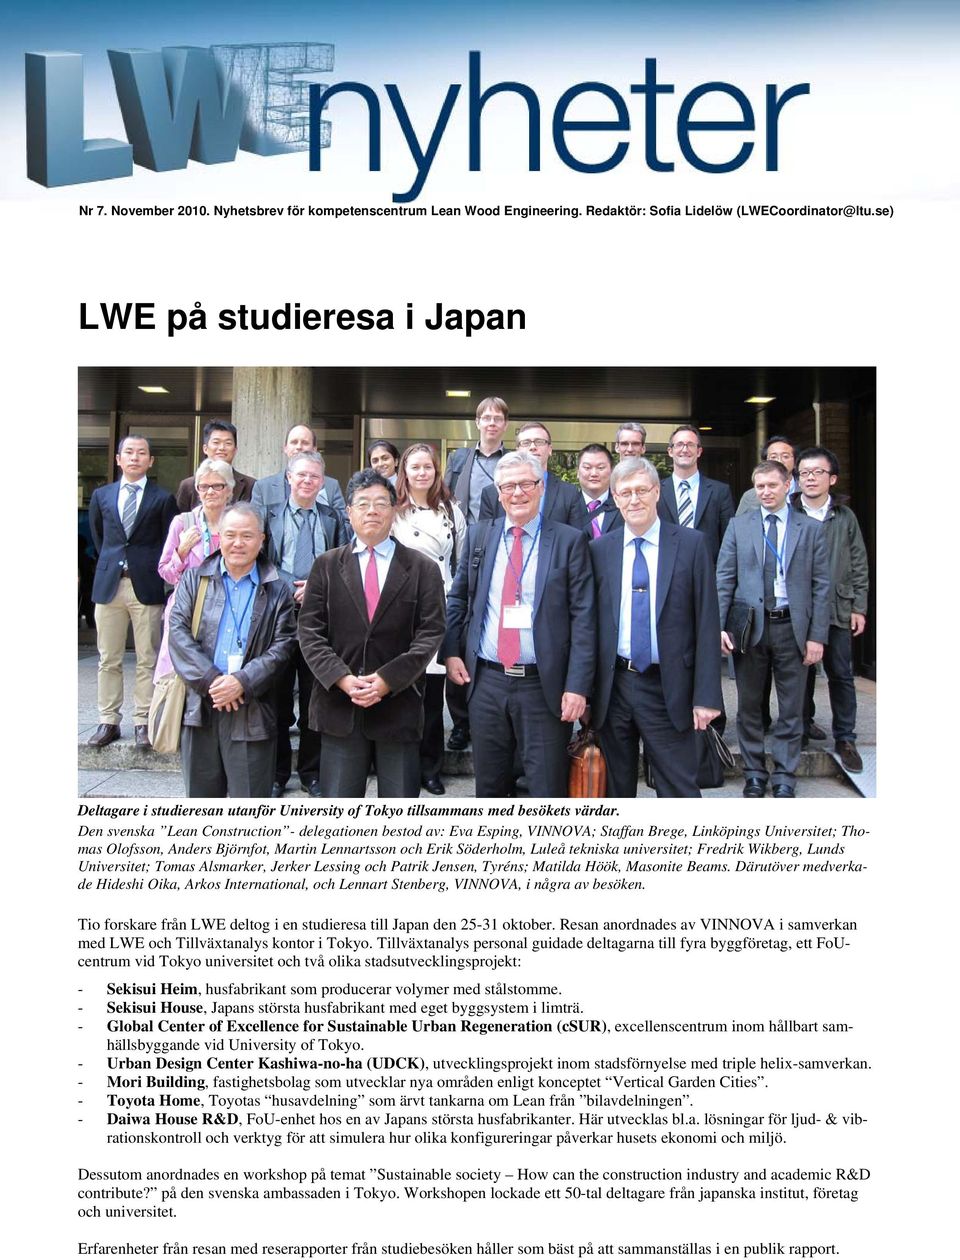 Den svenska Lean Construction - delegationen bestod av: Eva Esping, VINNOVA; Staffan Brege, Linköpings Universitet; Thomas Olofsson, Anders Björnfot, Martin Lennartsson och Erik Söderholm, Luleå